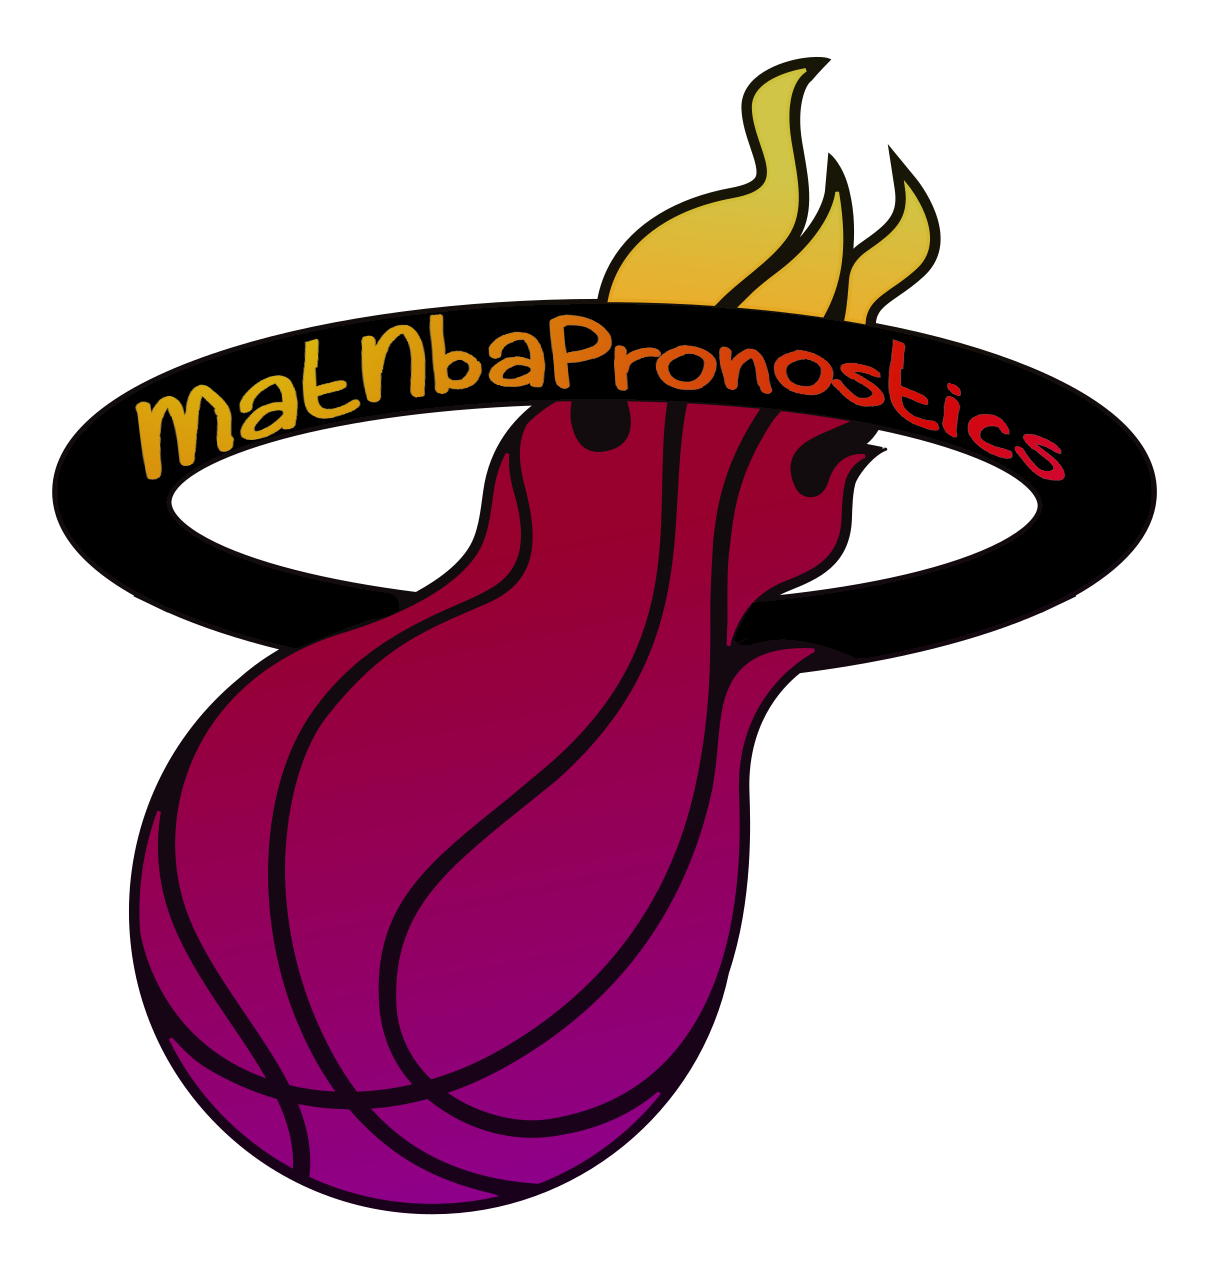 MatNbaPronostic : Expert et conseil en paris sportif